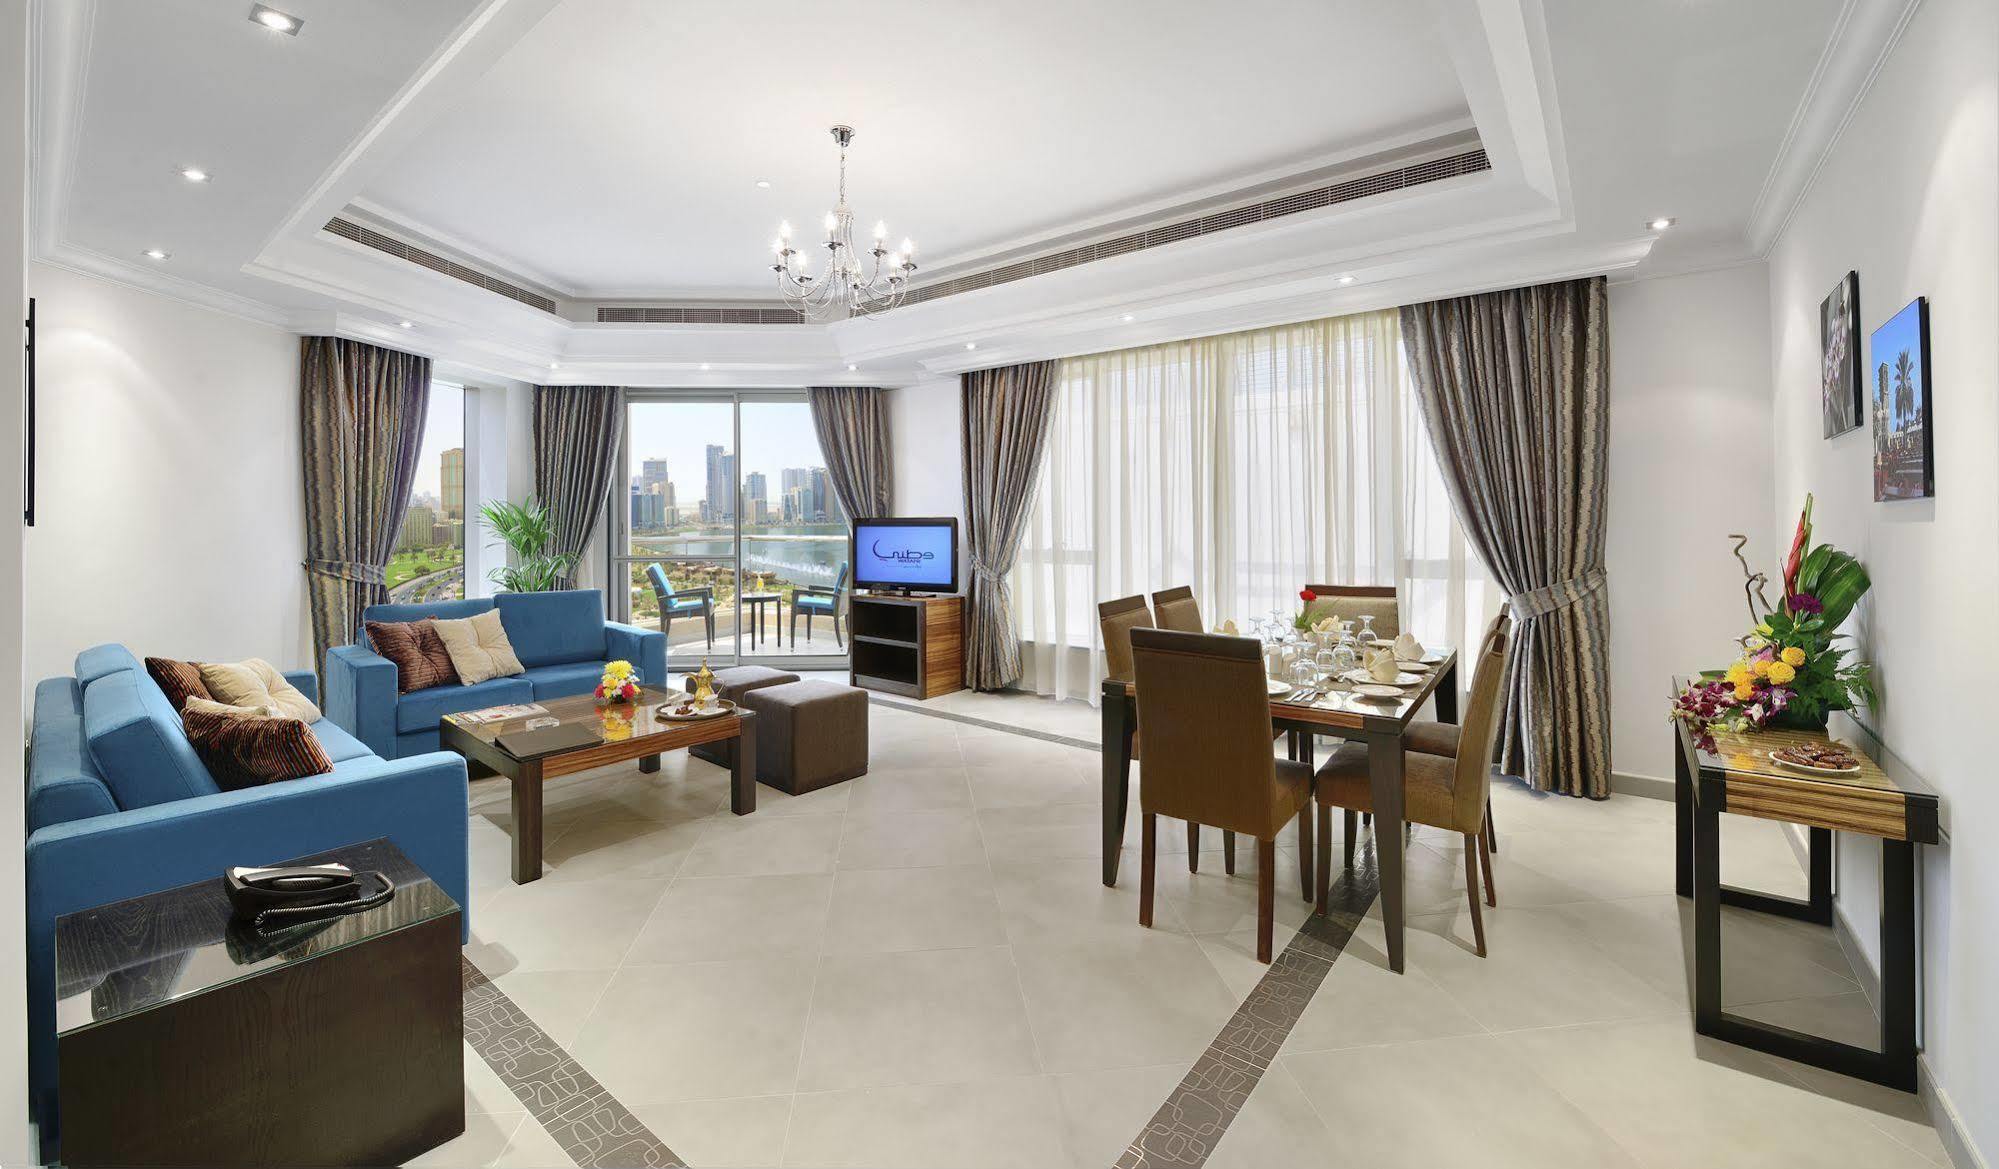 Al Majaz Premiere Hotel Apartments Sharjah Exterior foto